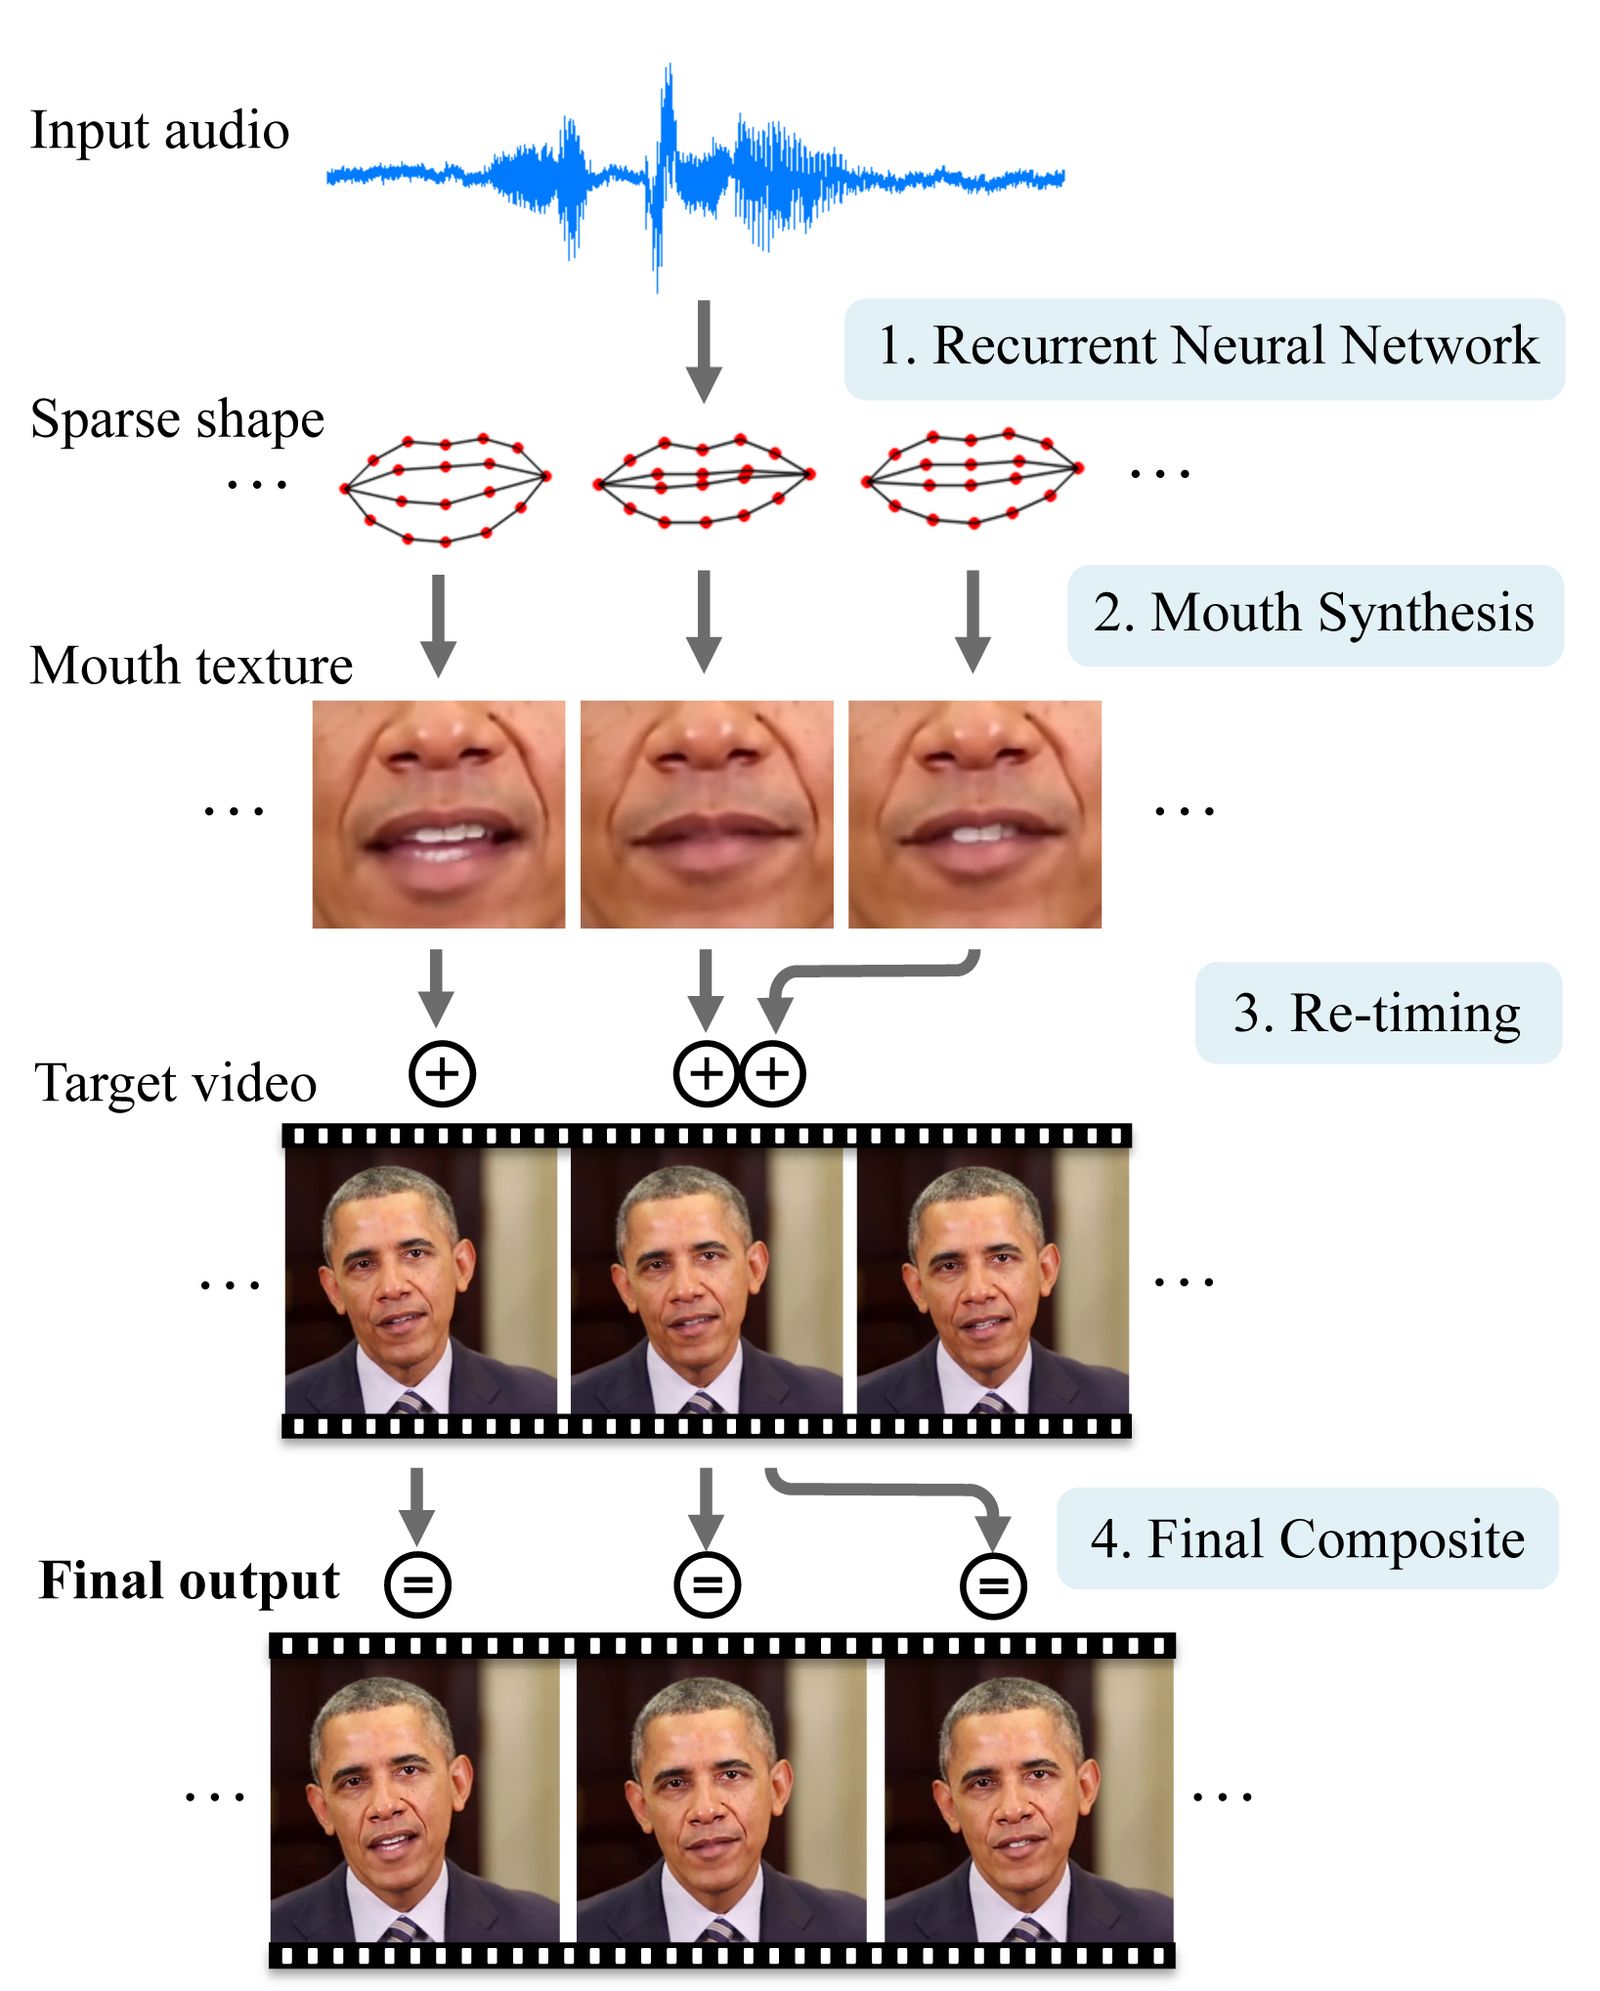 طريقة ضبط حركة فم الشخص المراد محاكاته مع الكلام المنطوق - جامعة واشنطن